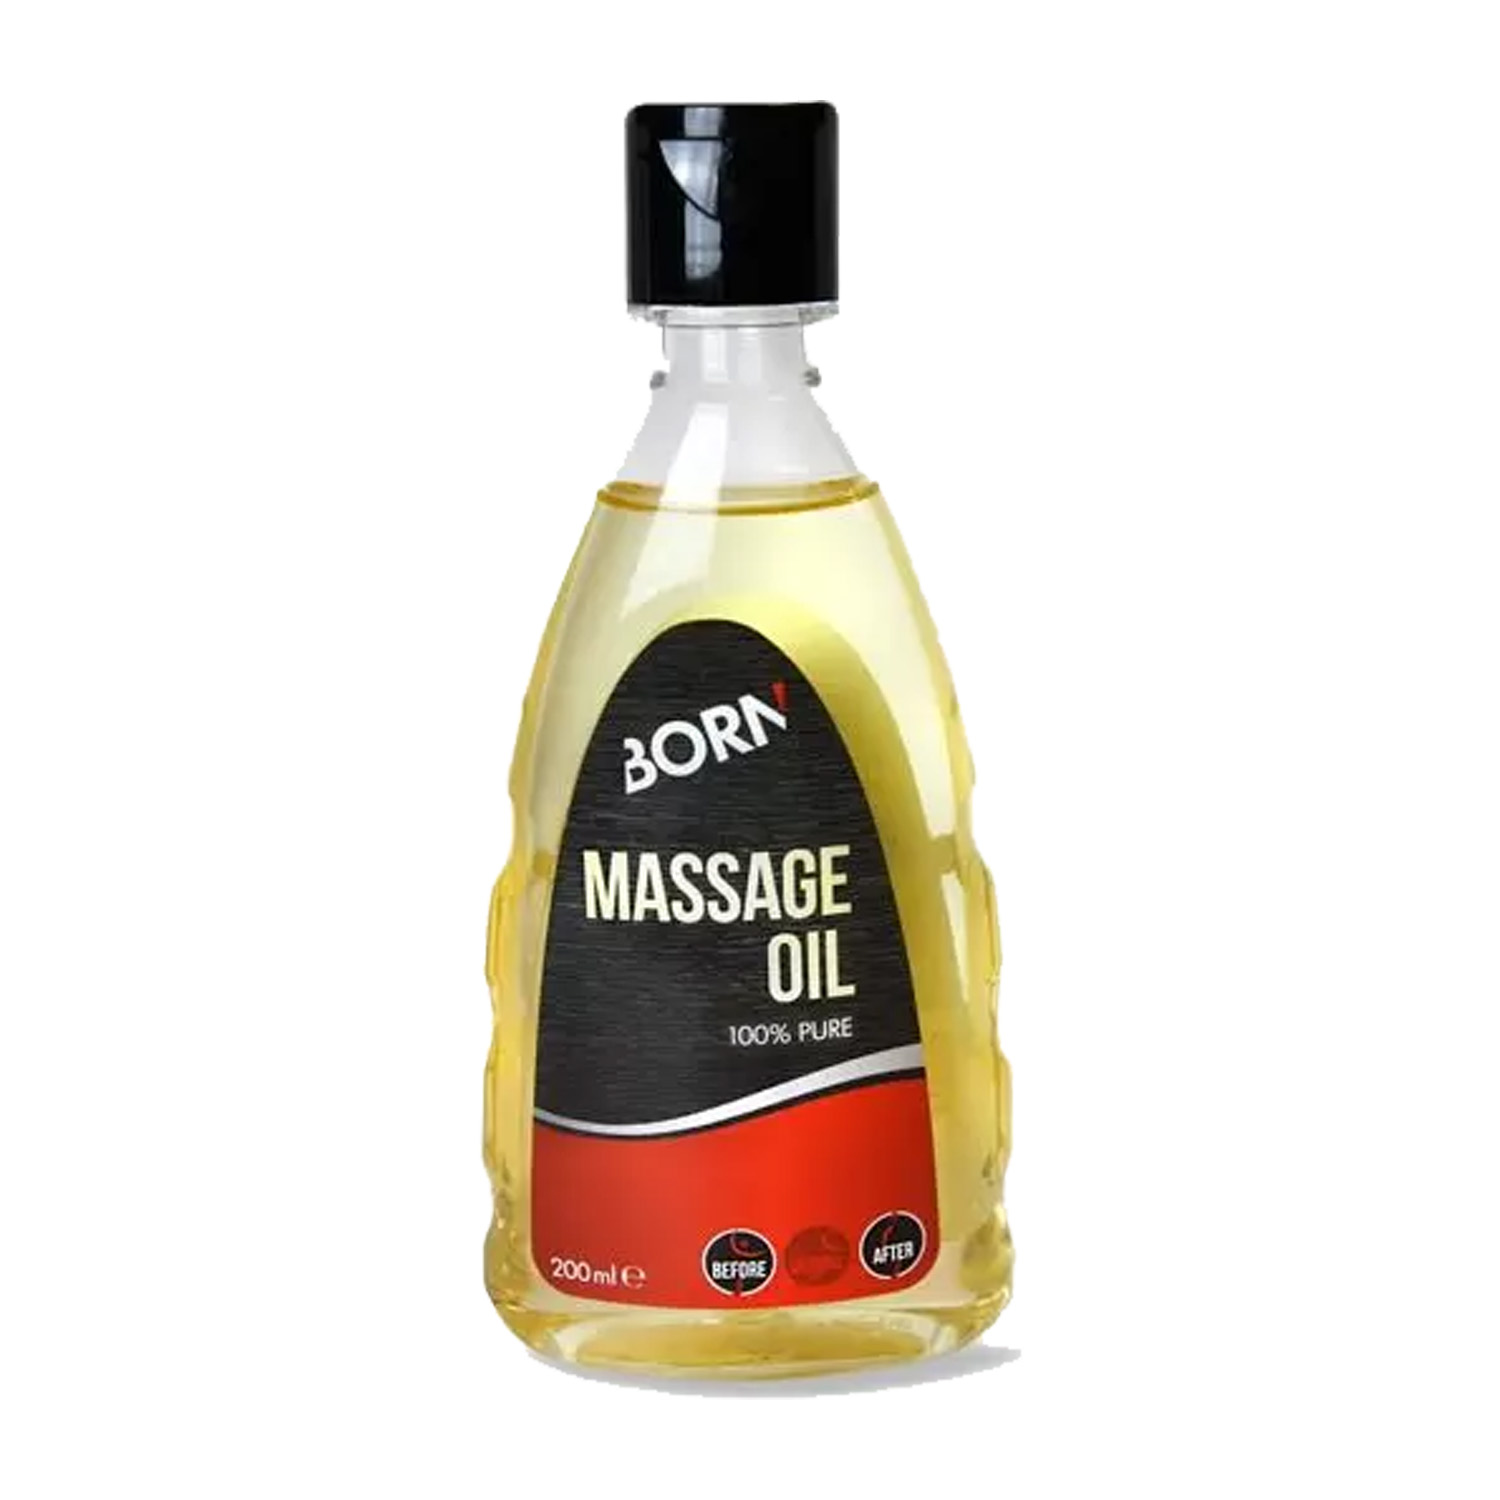 Born Massage-Oil